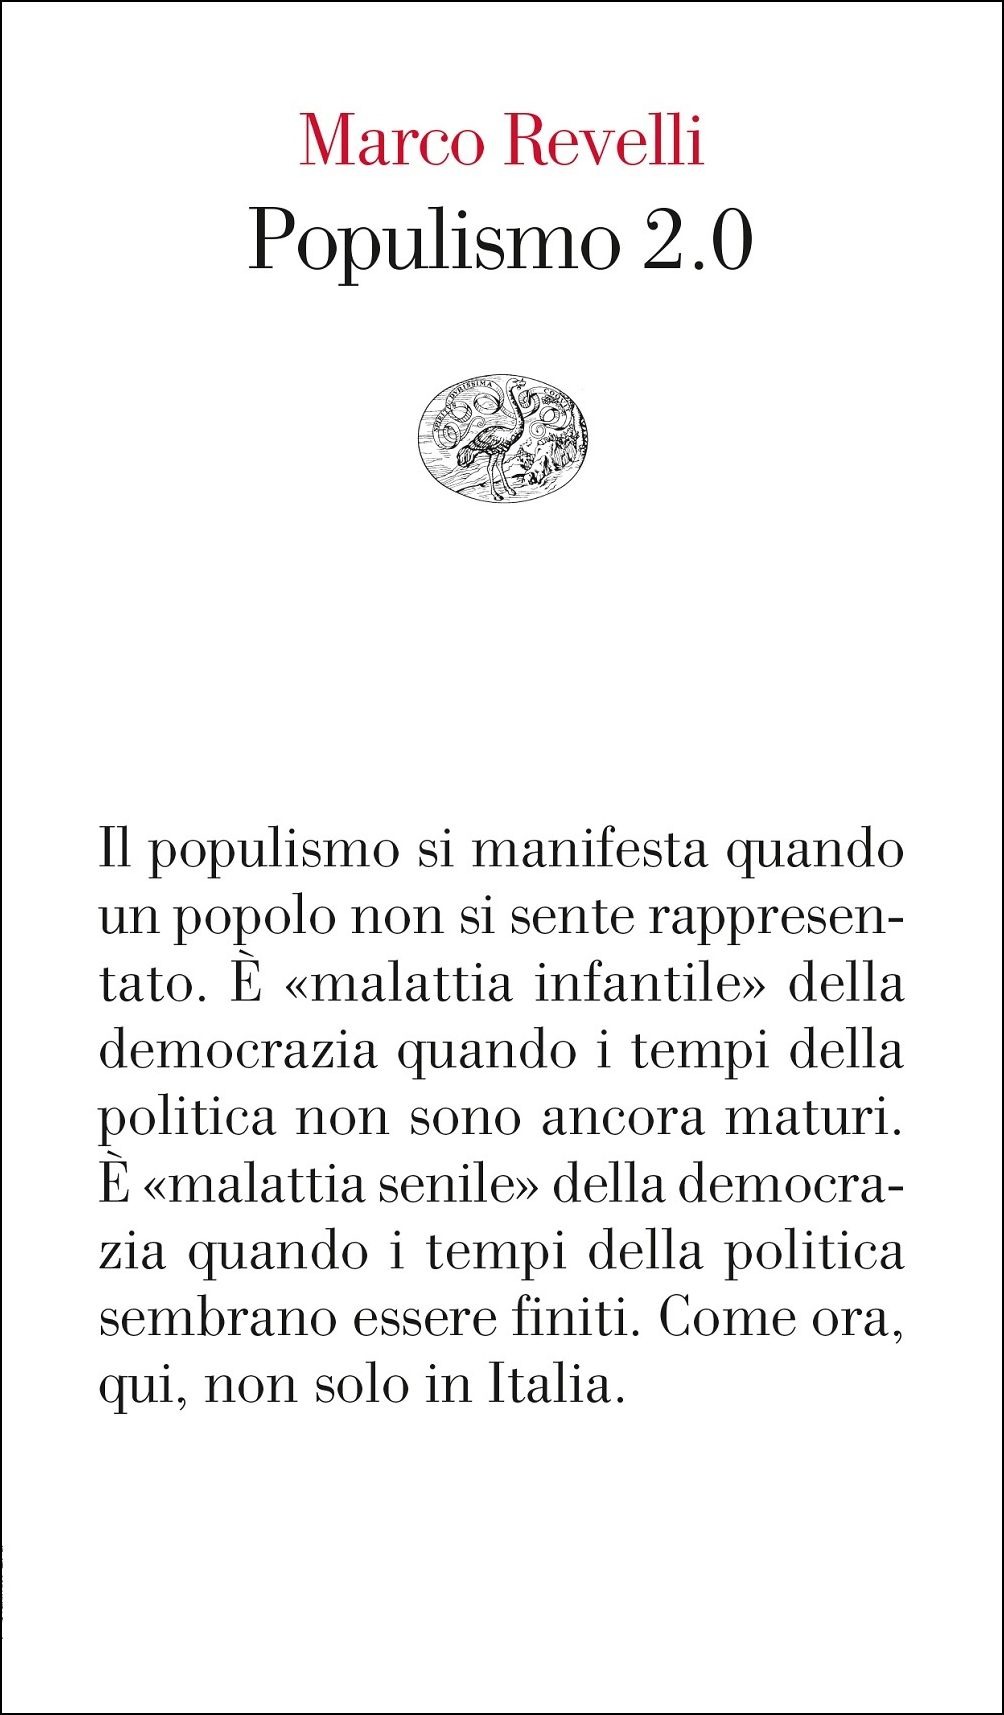 Marco Revelli: Populismo 2.0